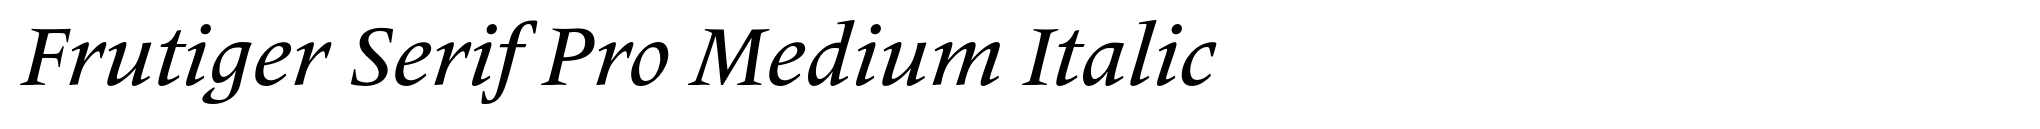 Frutiger Serif Pro Medium Italic image